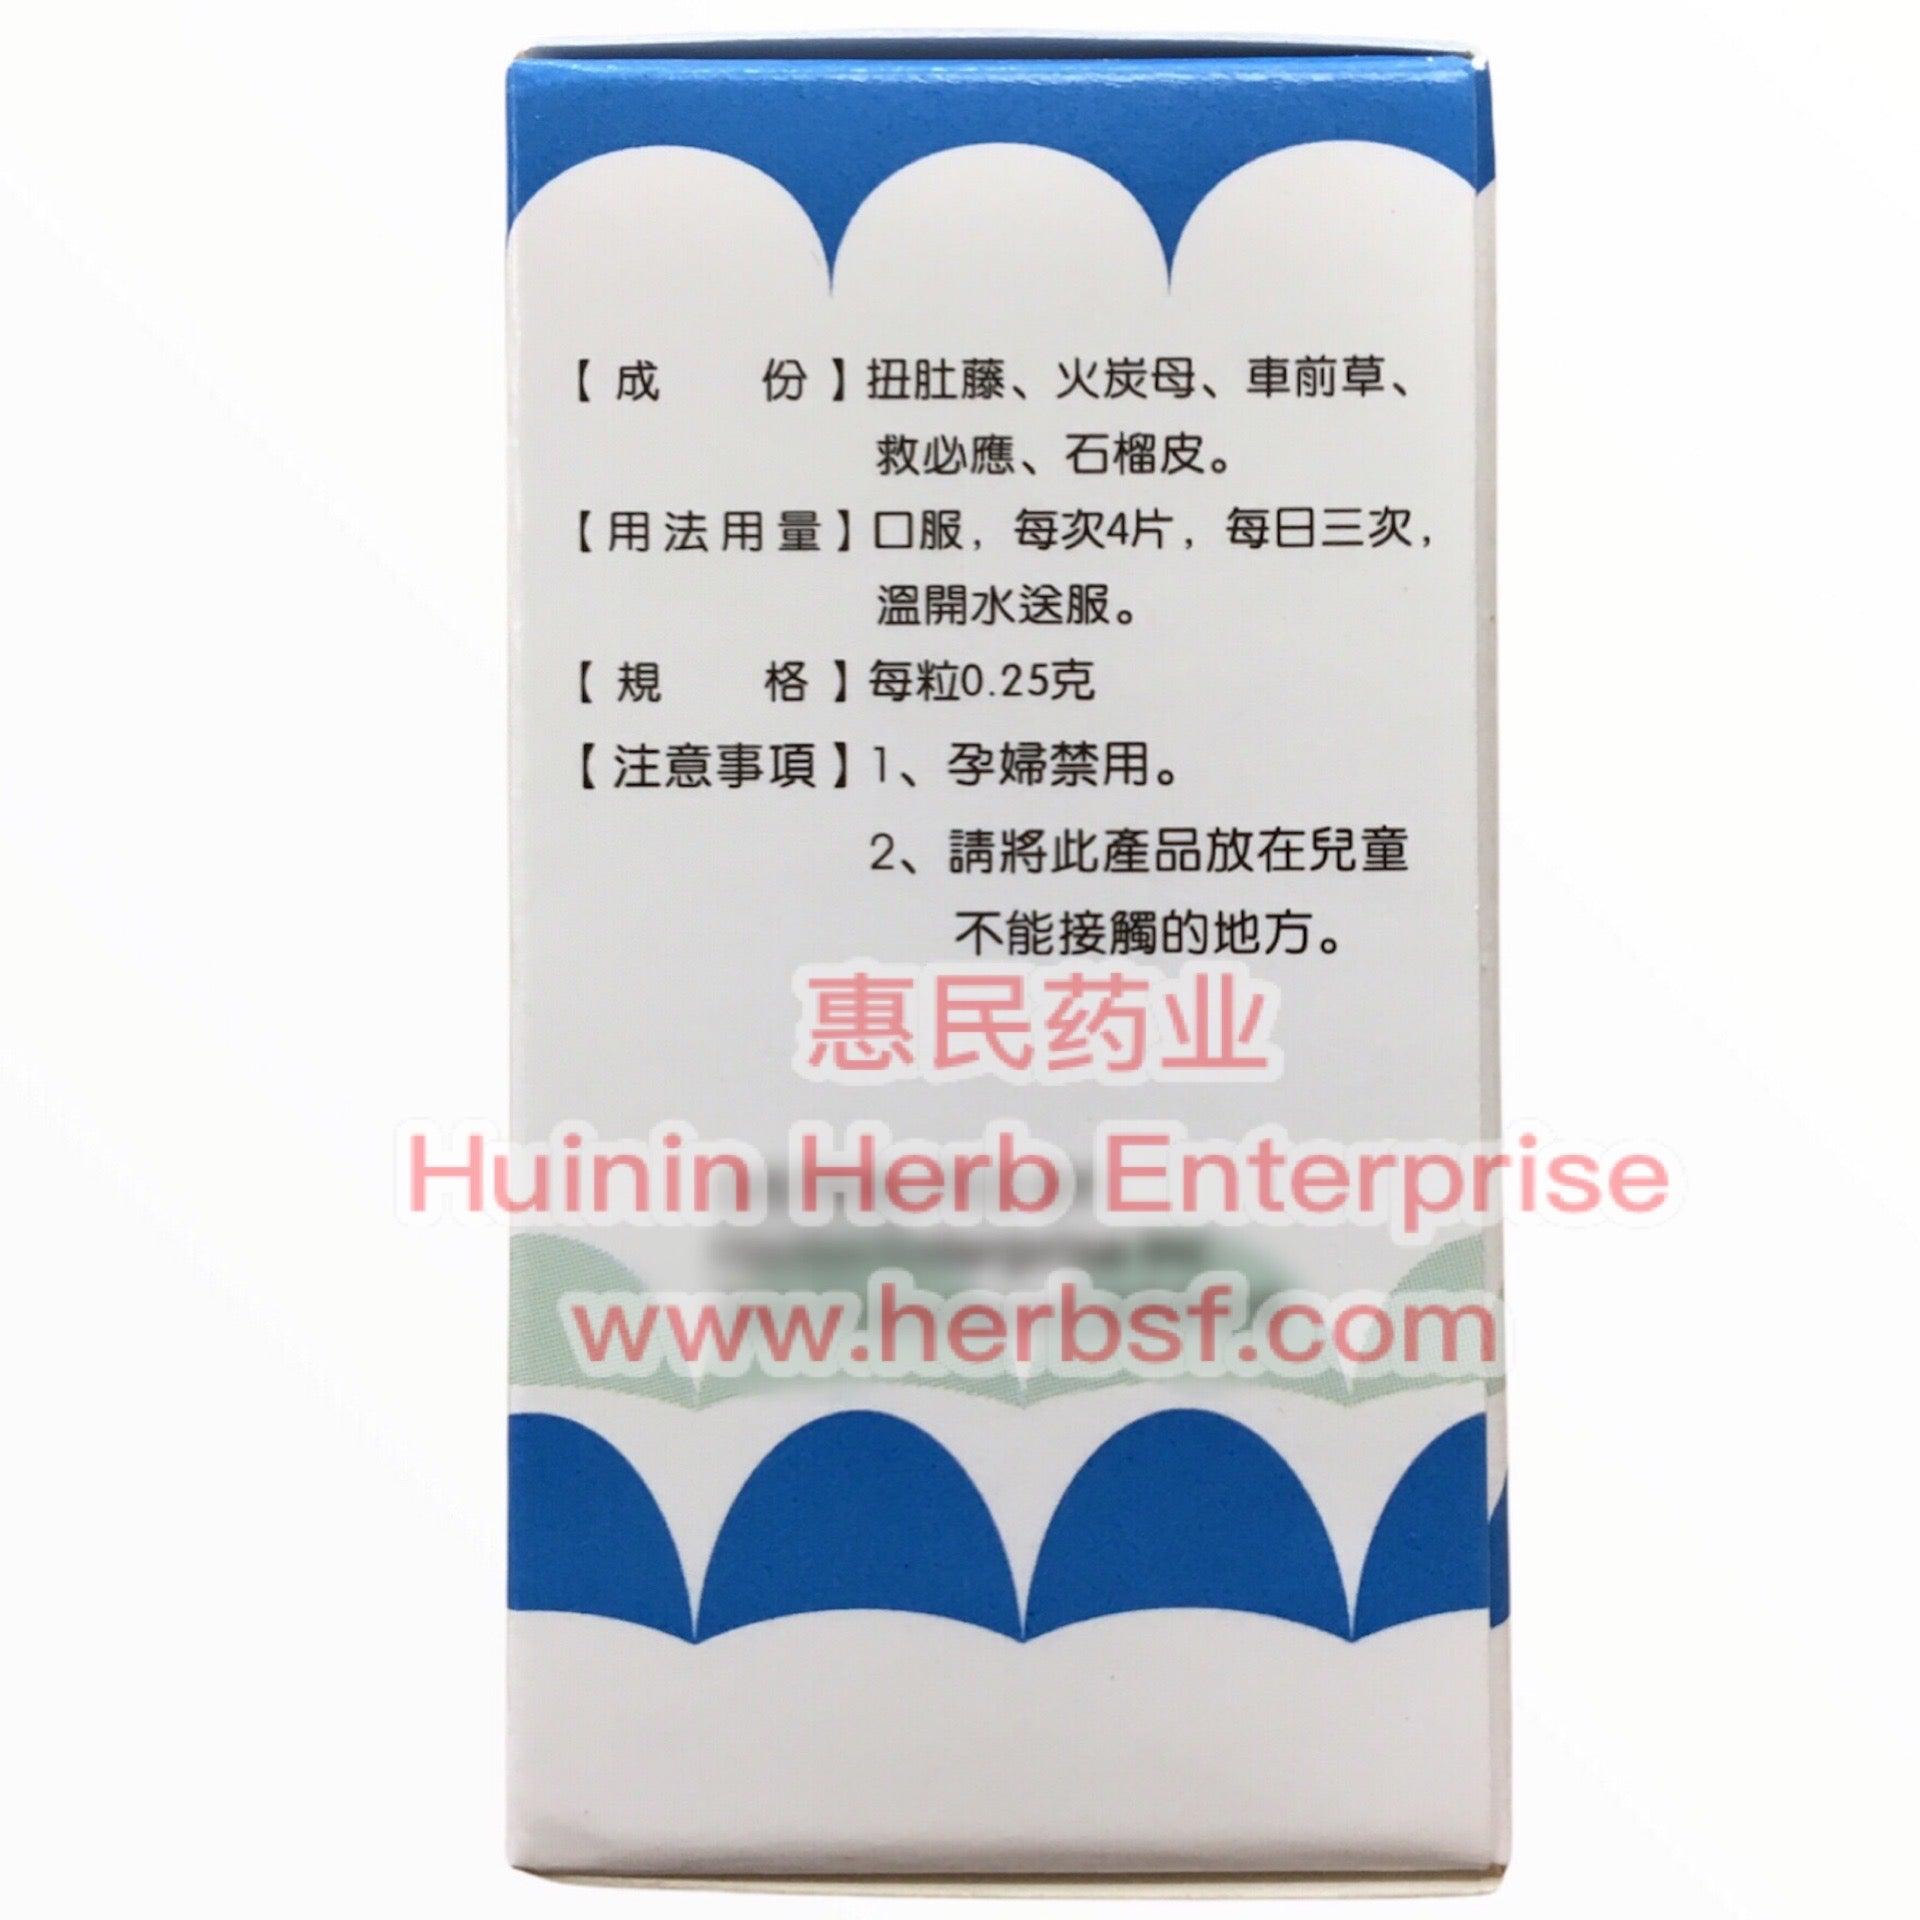 Fu Ke An - Huimin Herb Online, LLC